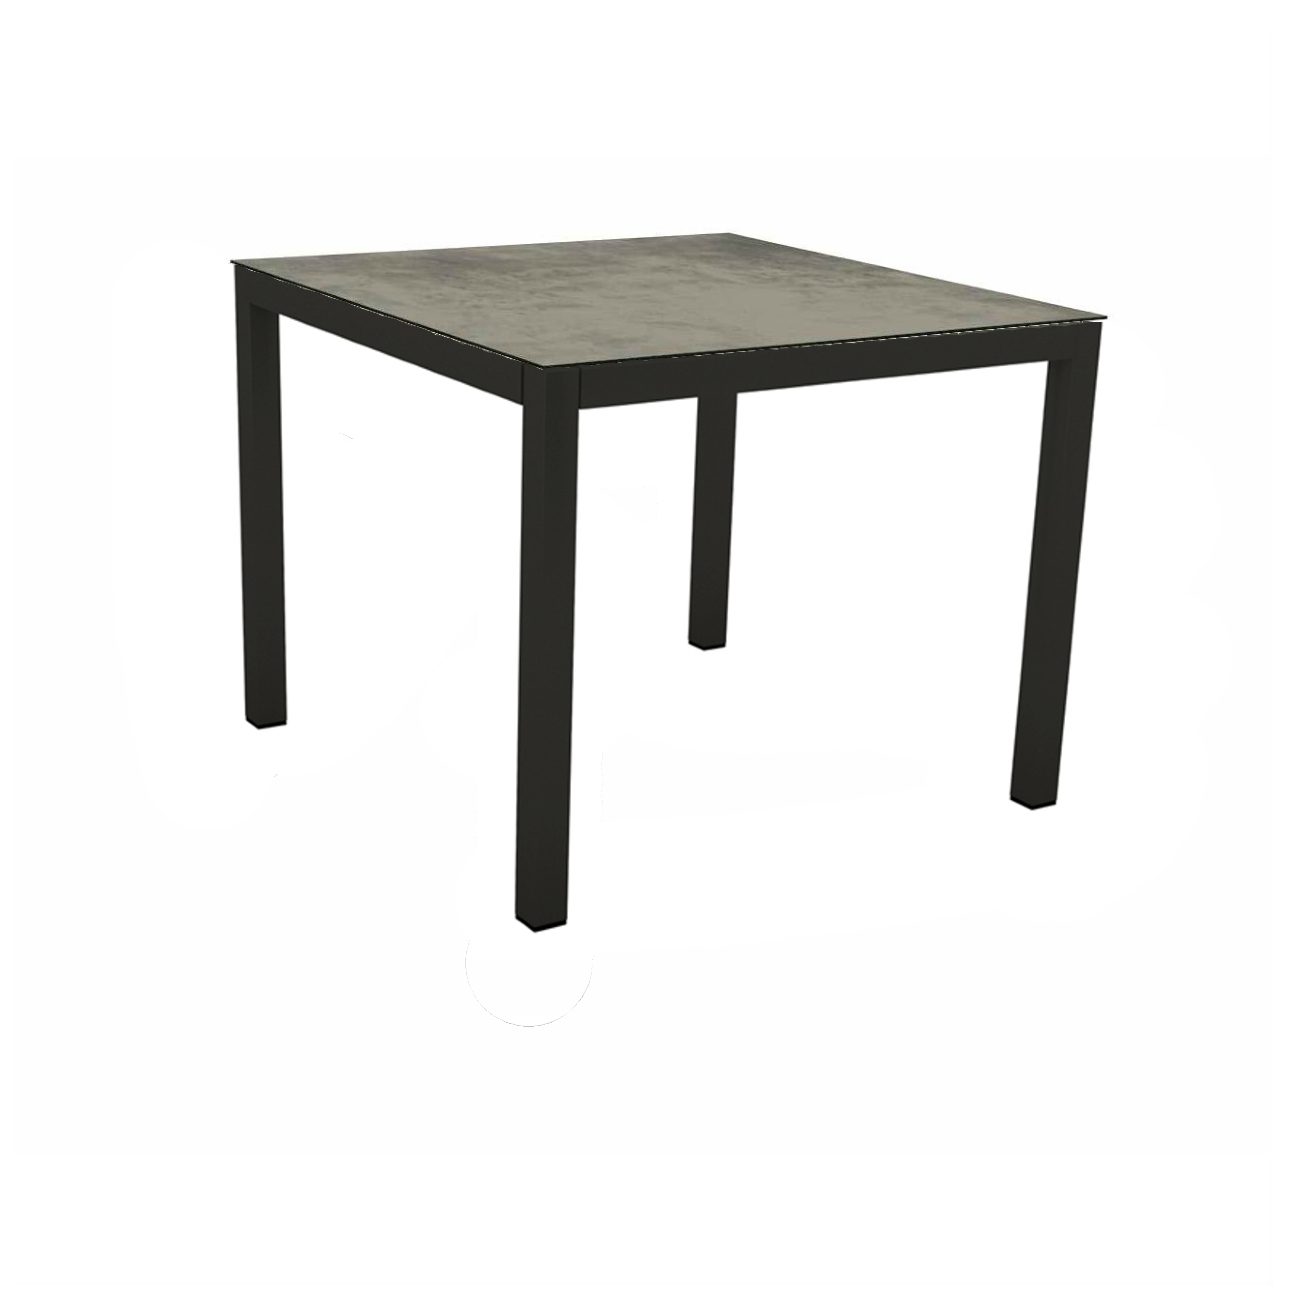 Stern Gartentisch, Gestell Aluminium schwarz matt, Tischplatte HPL Zement, 80x80 cm